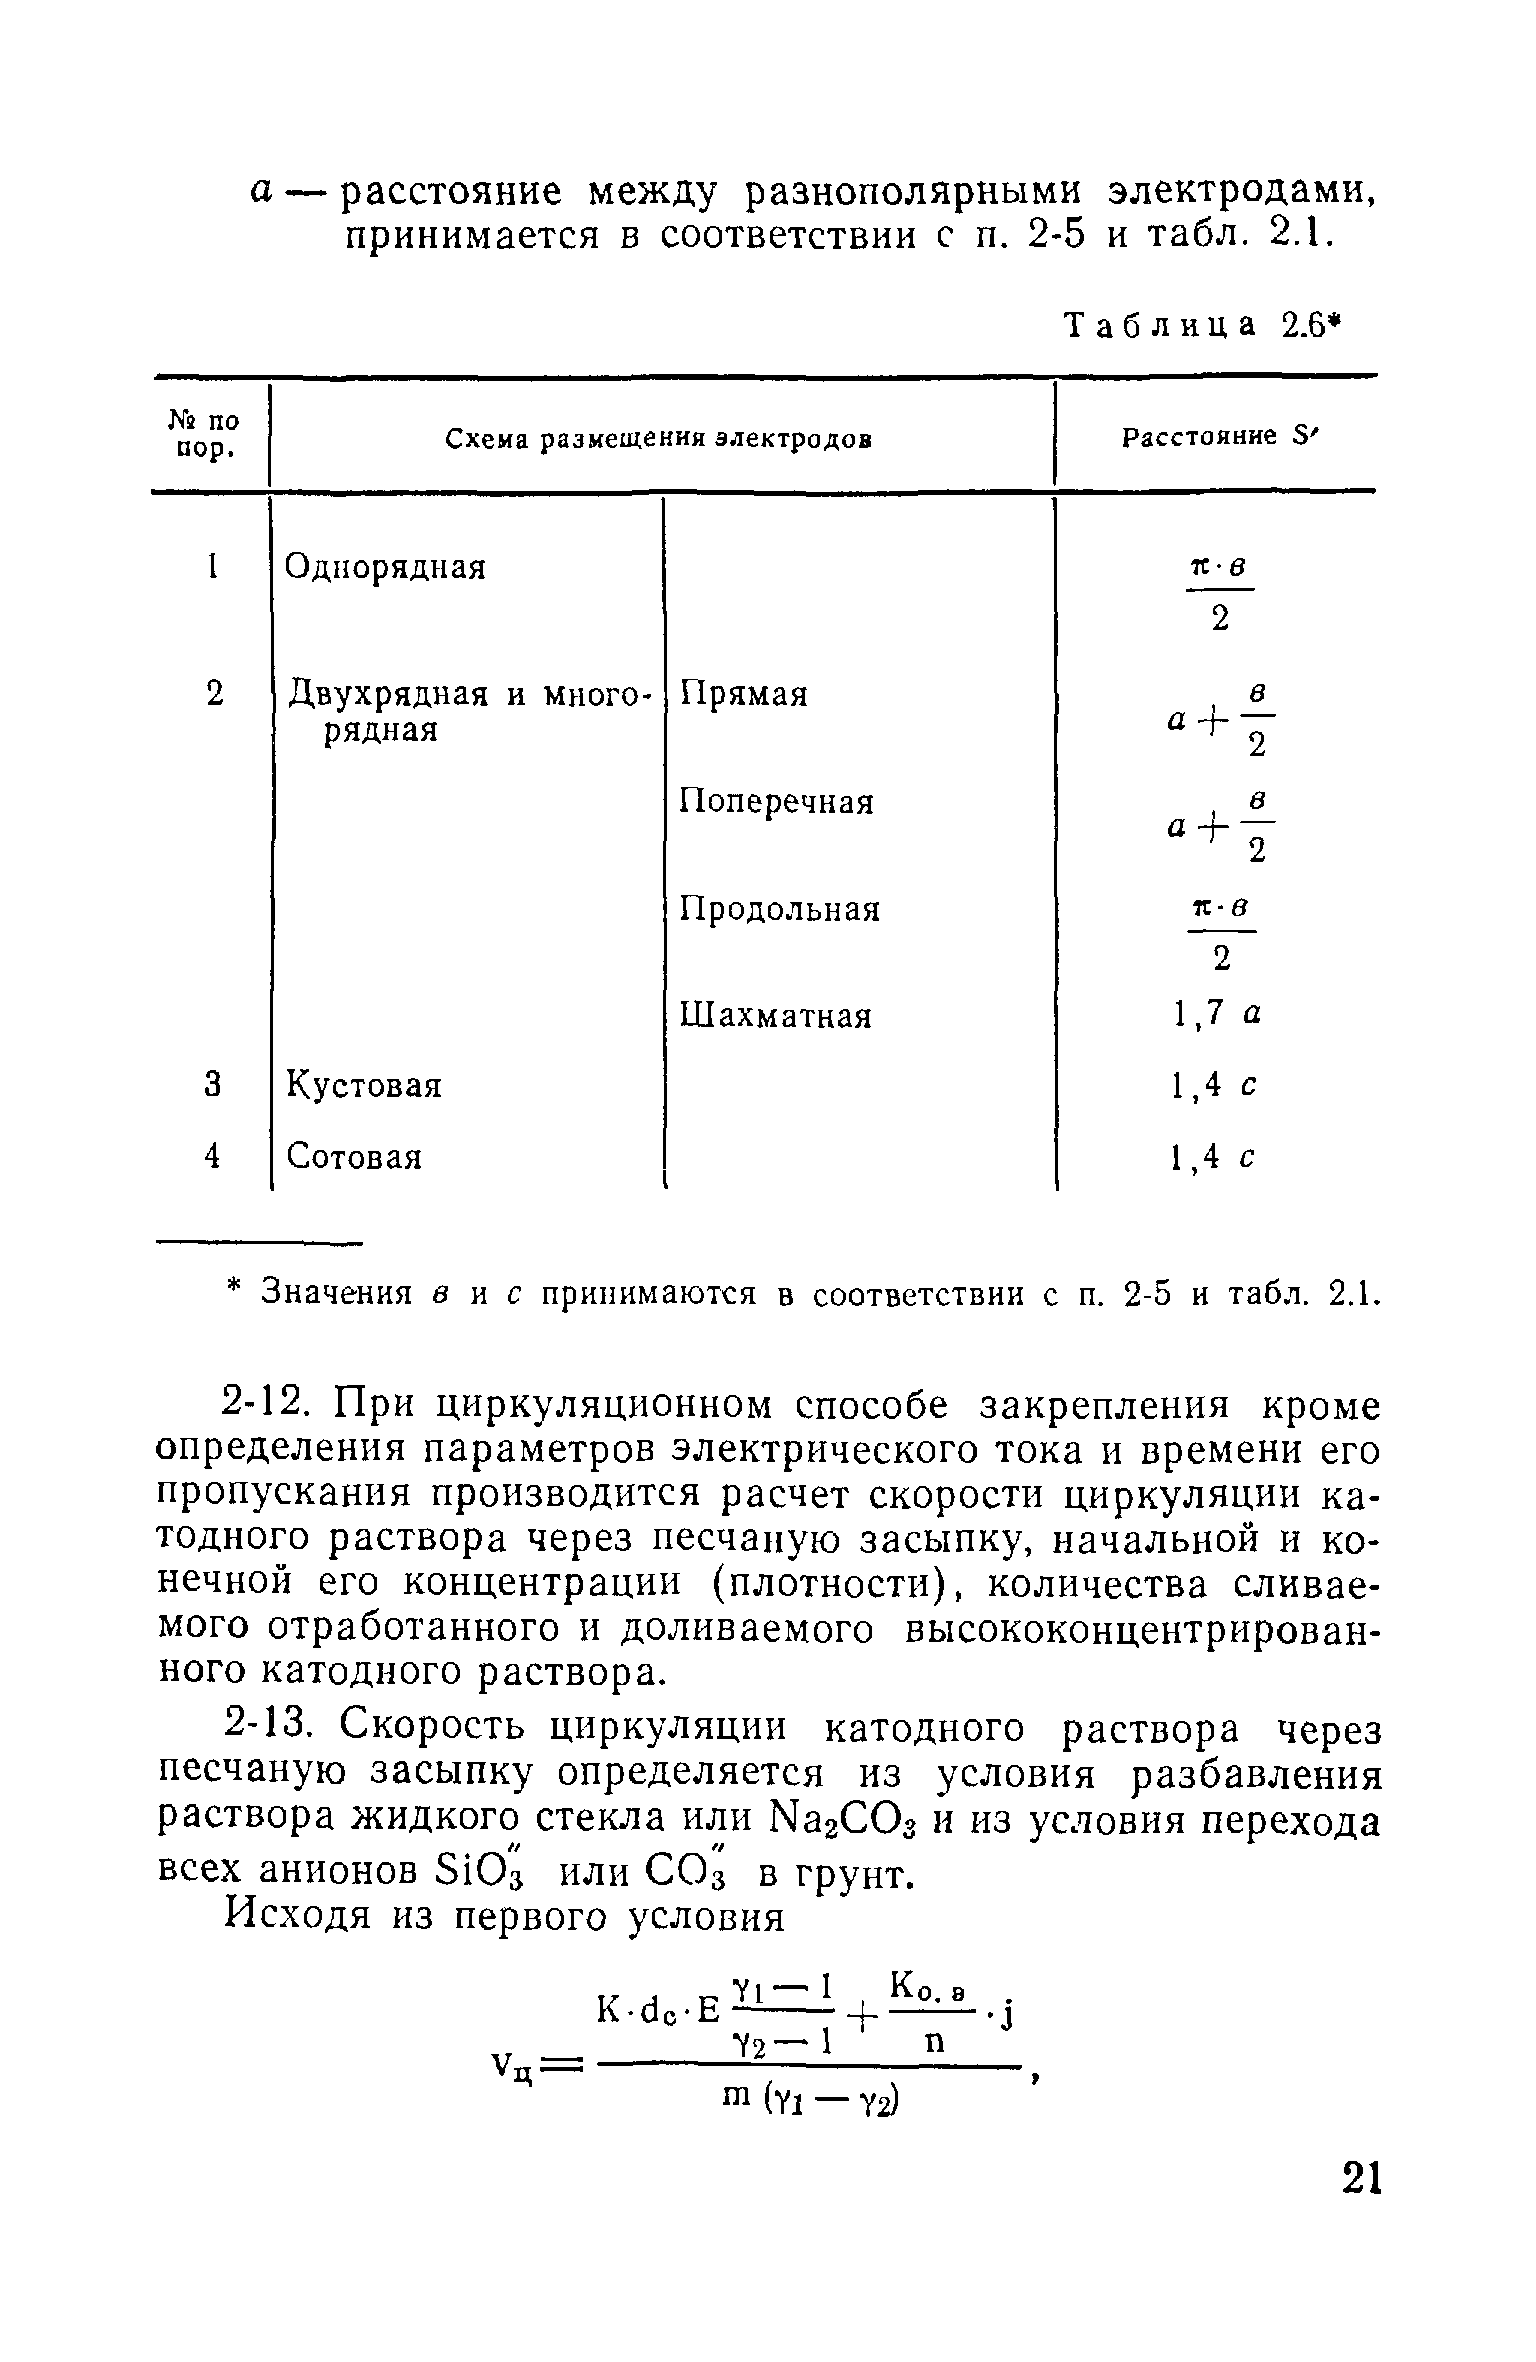 ВСН 02-73/МО СССР